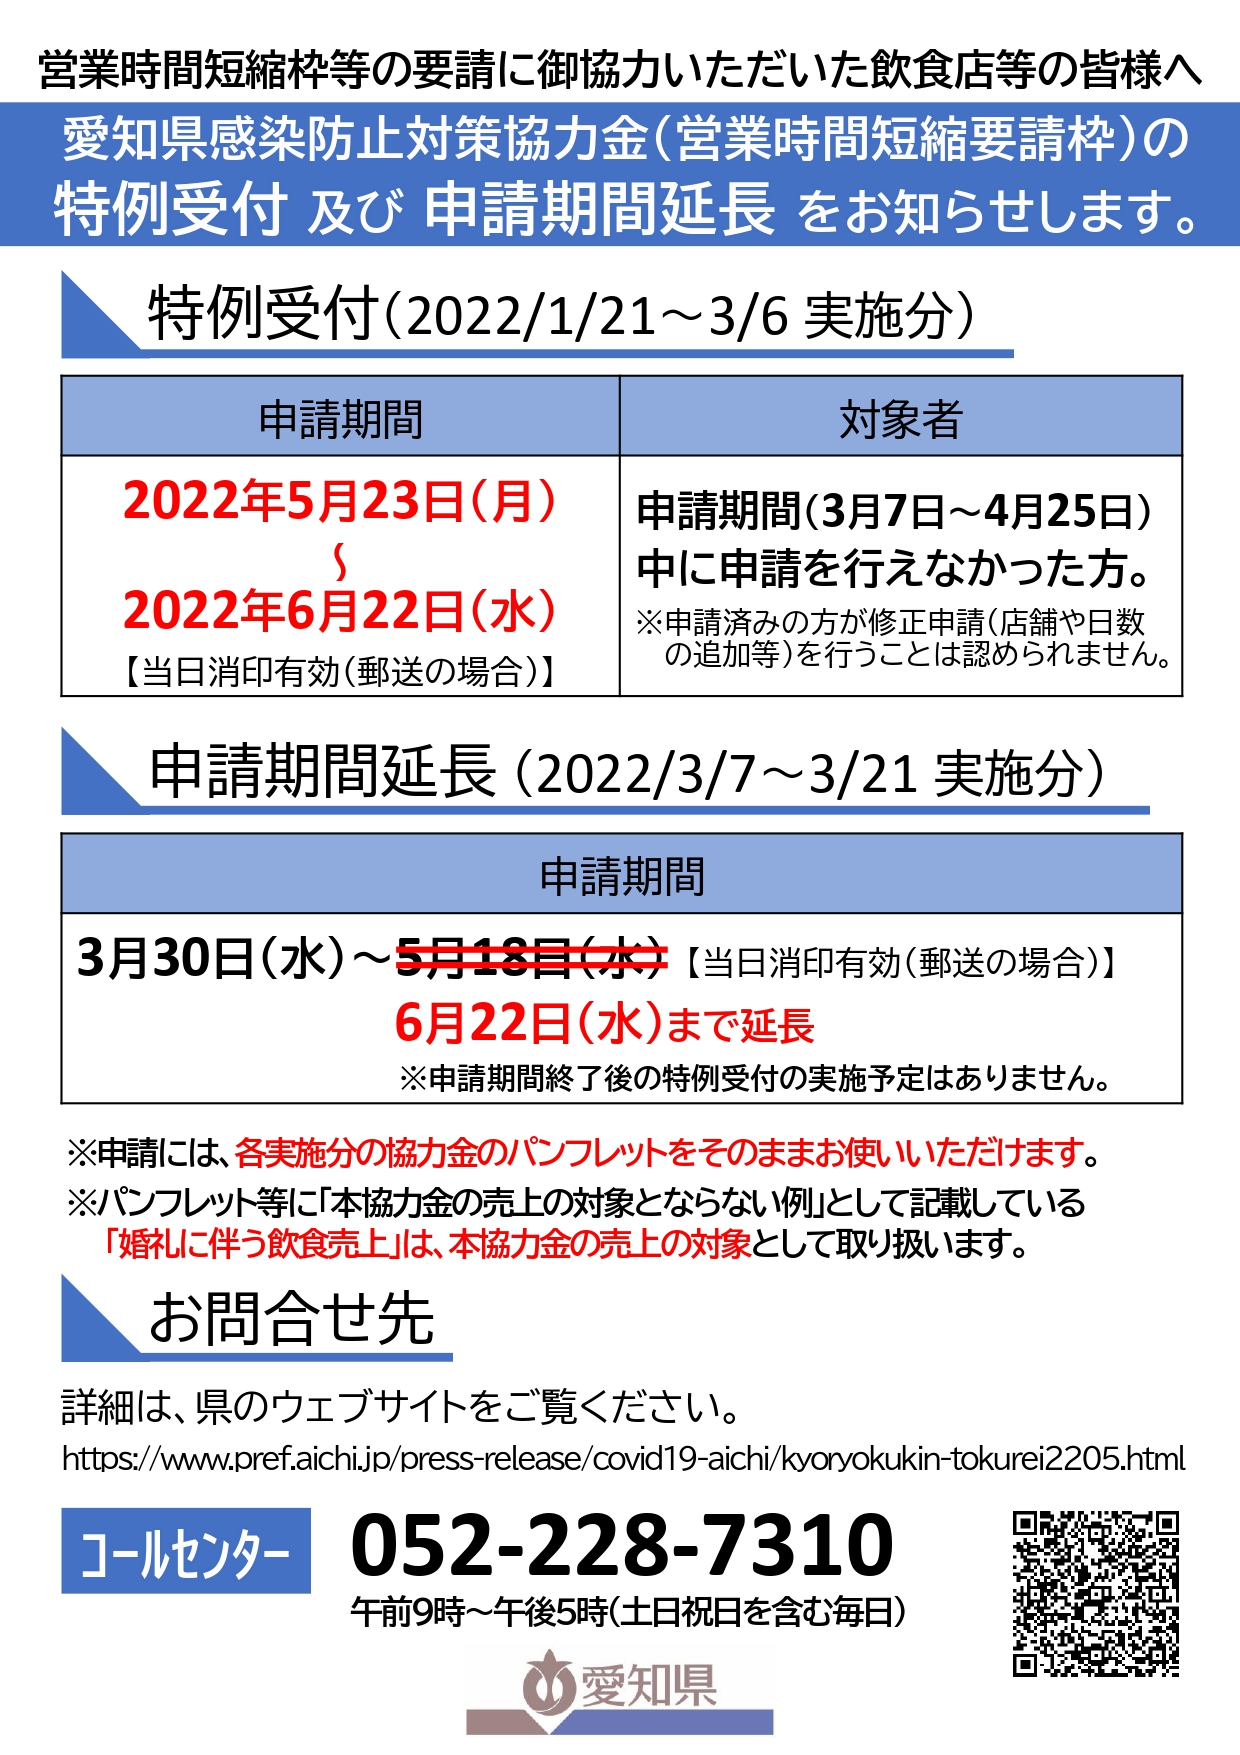 「愛知県感染防止対策協力金」の「1/21～3/6実施分」の特例受付の開始及び「3/7～3/21実施分」の申請期間の延長の実施について